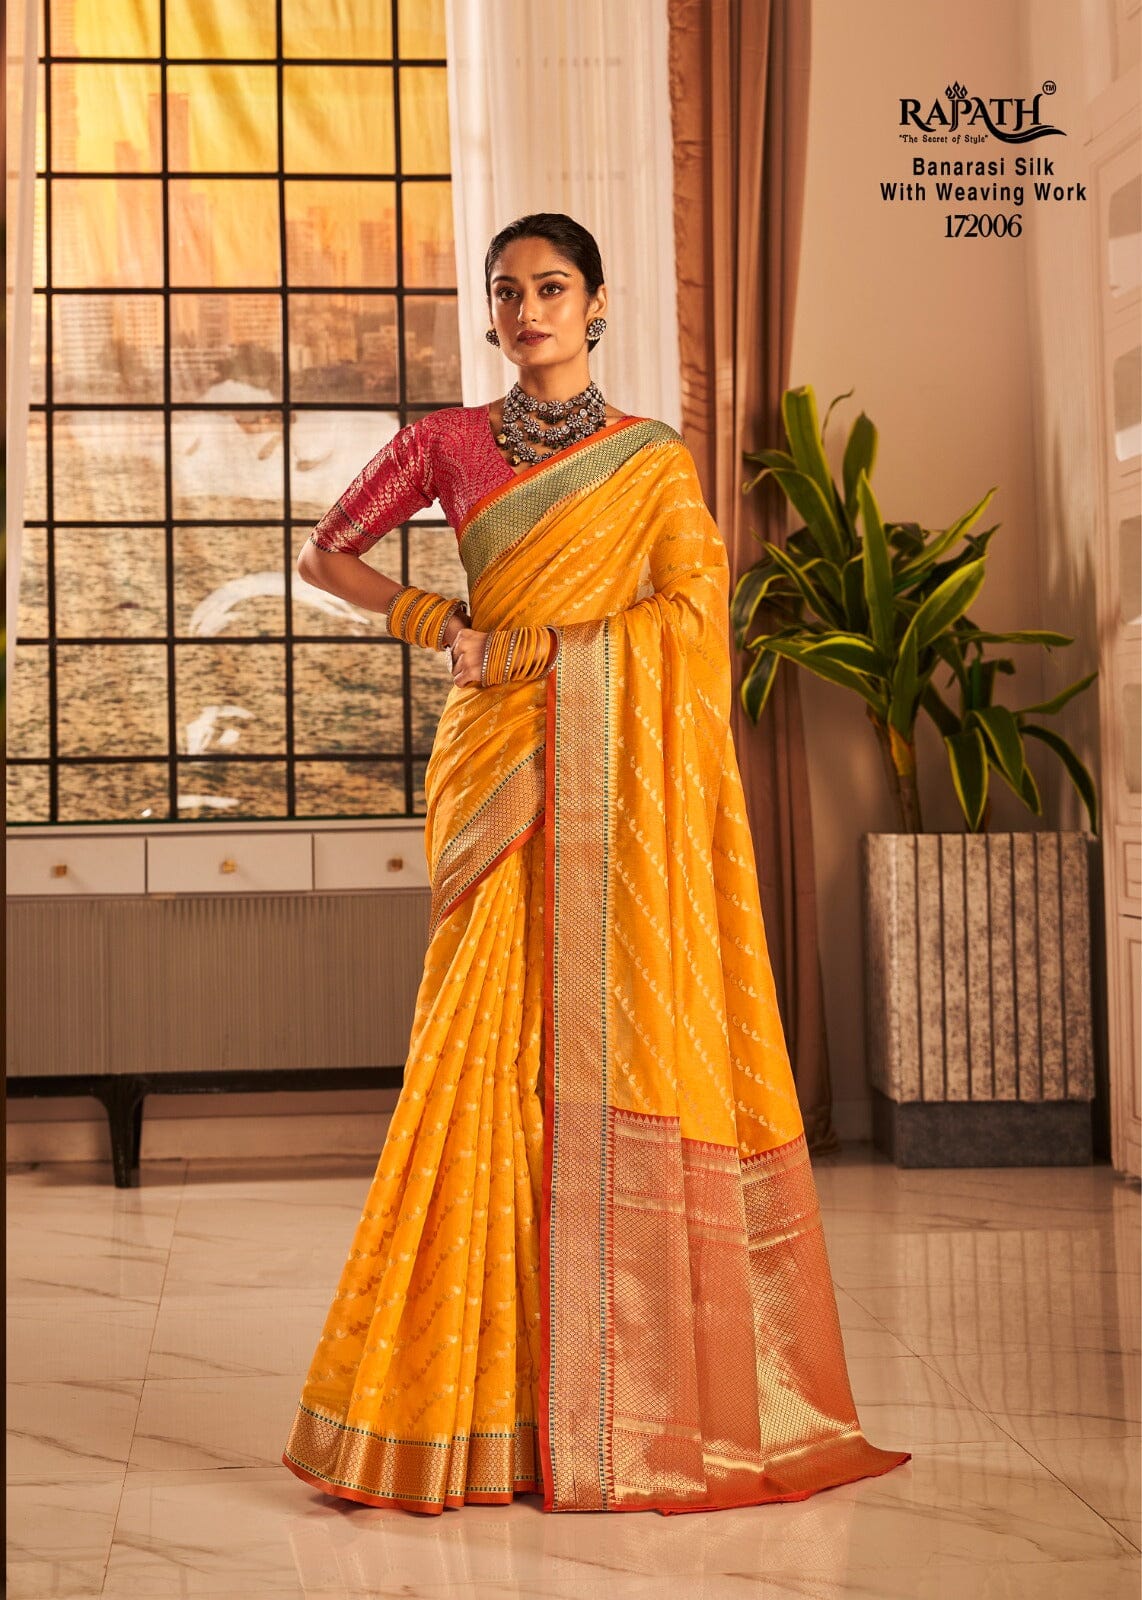 172006 Rajpath Vaijanti Banarasi Silk With Weaving Saree Silk Saree Shopin Di Apparels 